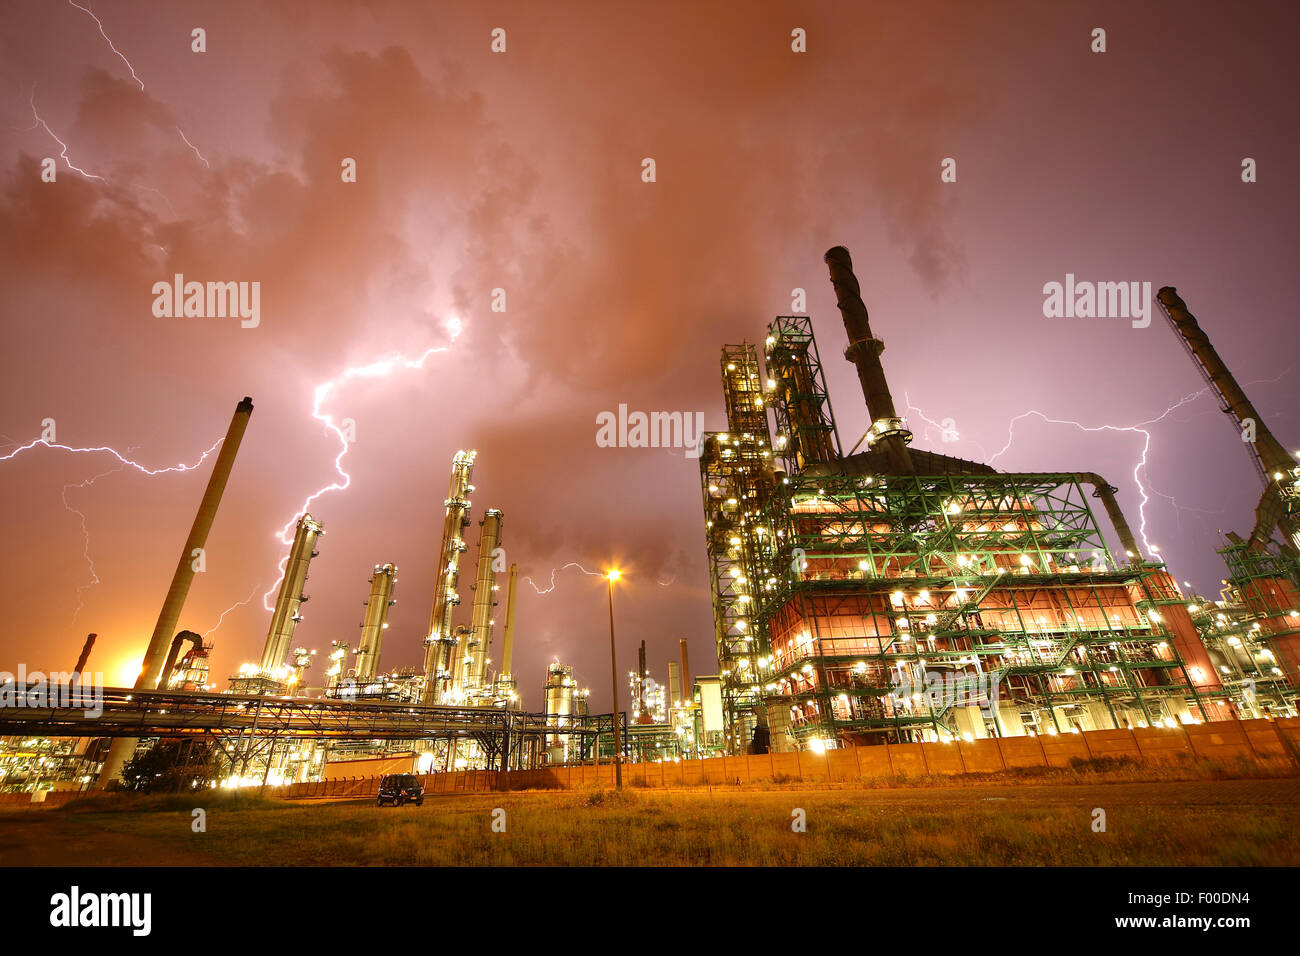 Bloqueos de tormentas y relámpagos arriba aclarará la industria petroquímica en Amberes puerto por la noche, Bélgica, Amberes Foto de stock